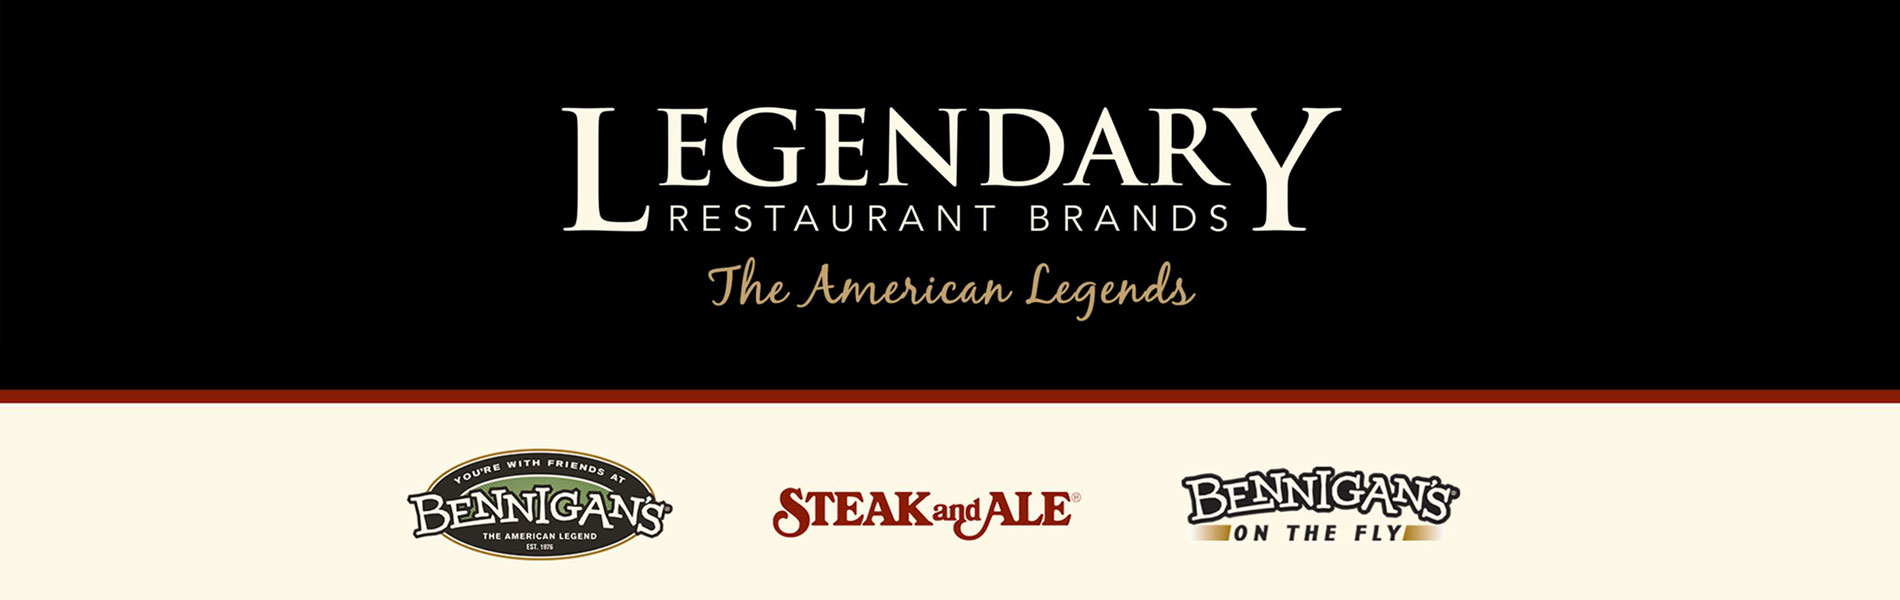 Legendary Restaurant Brands